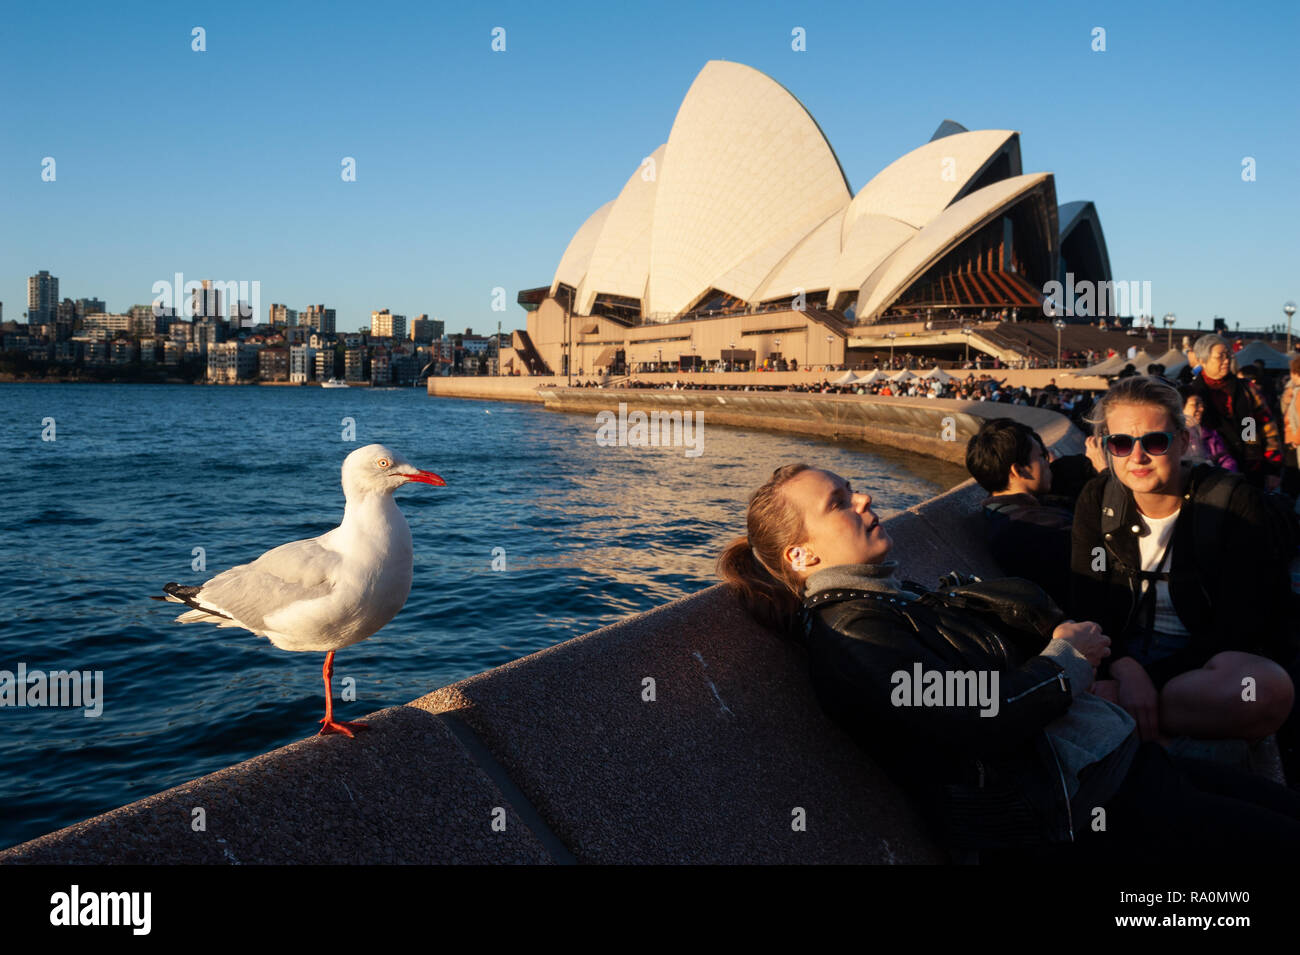 16.09.2018, Sydney, New South Wales, Australien - Menschen geniessen zusammen mit einer Moewe die Abendsonne in einem Strassencafe am Circular Quay, w Stock Photo